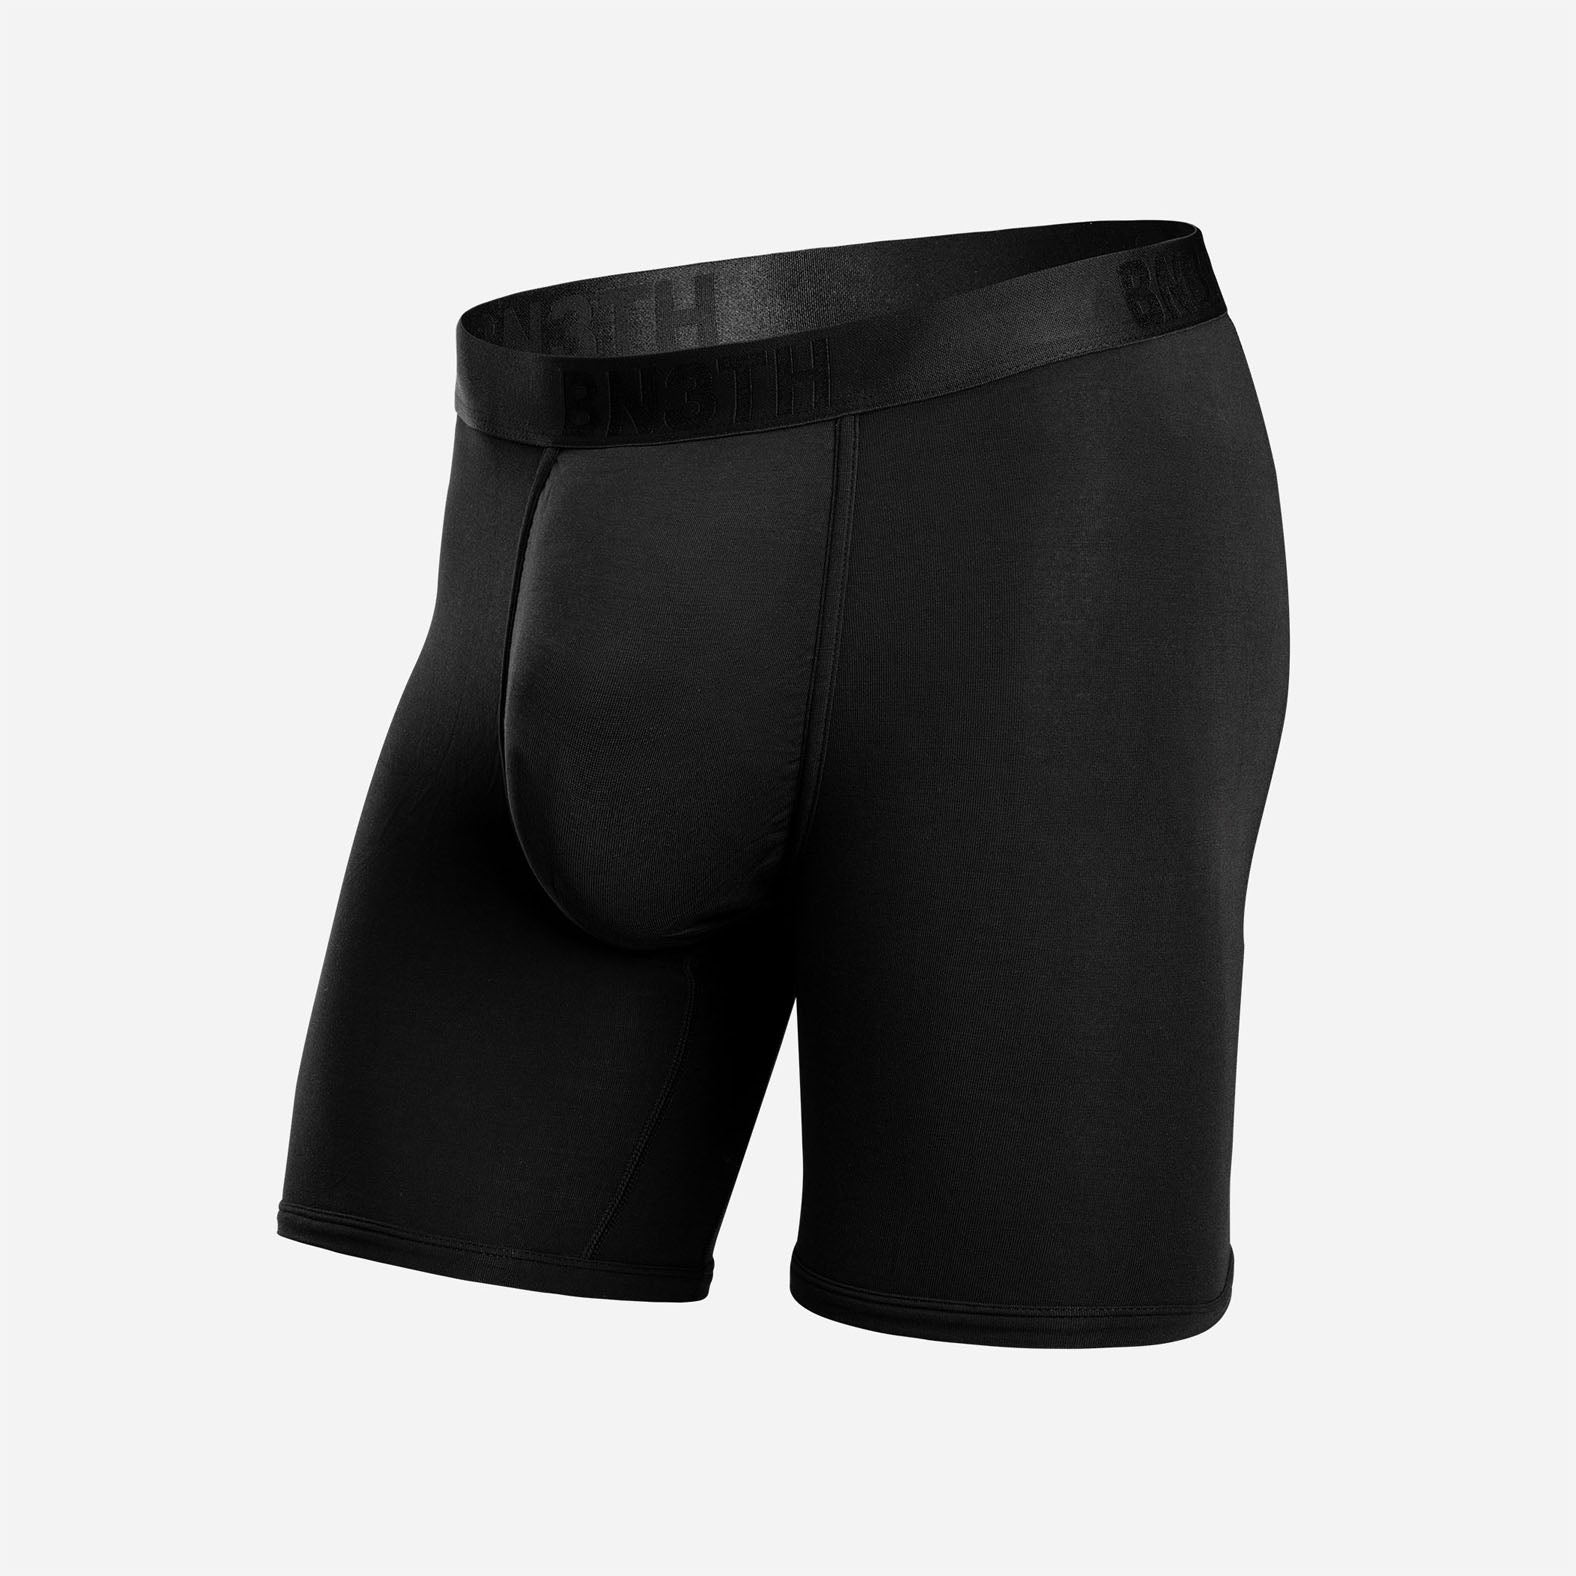 Black, Underwear for Men, Boxers & Briefs